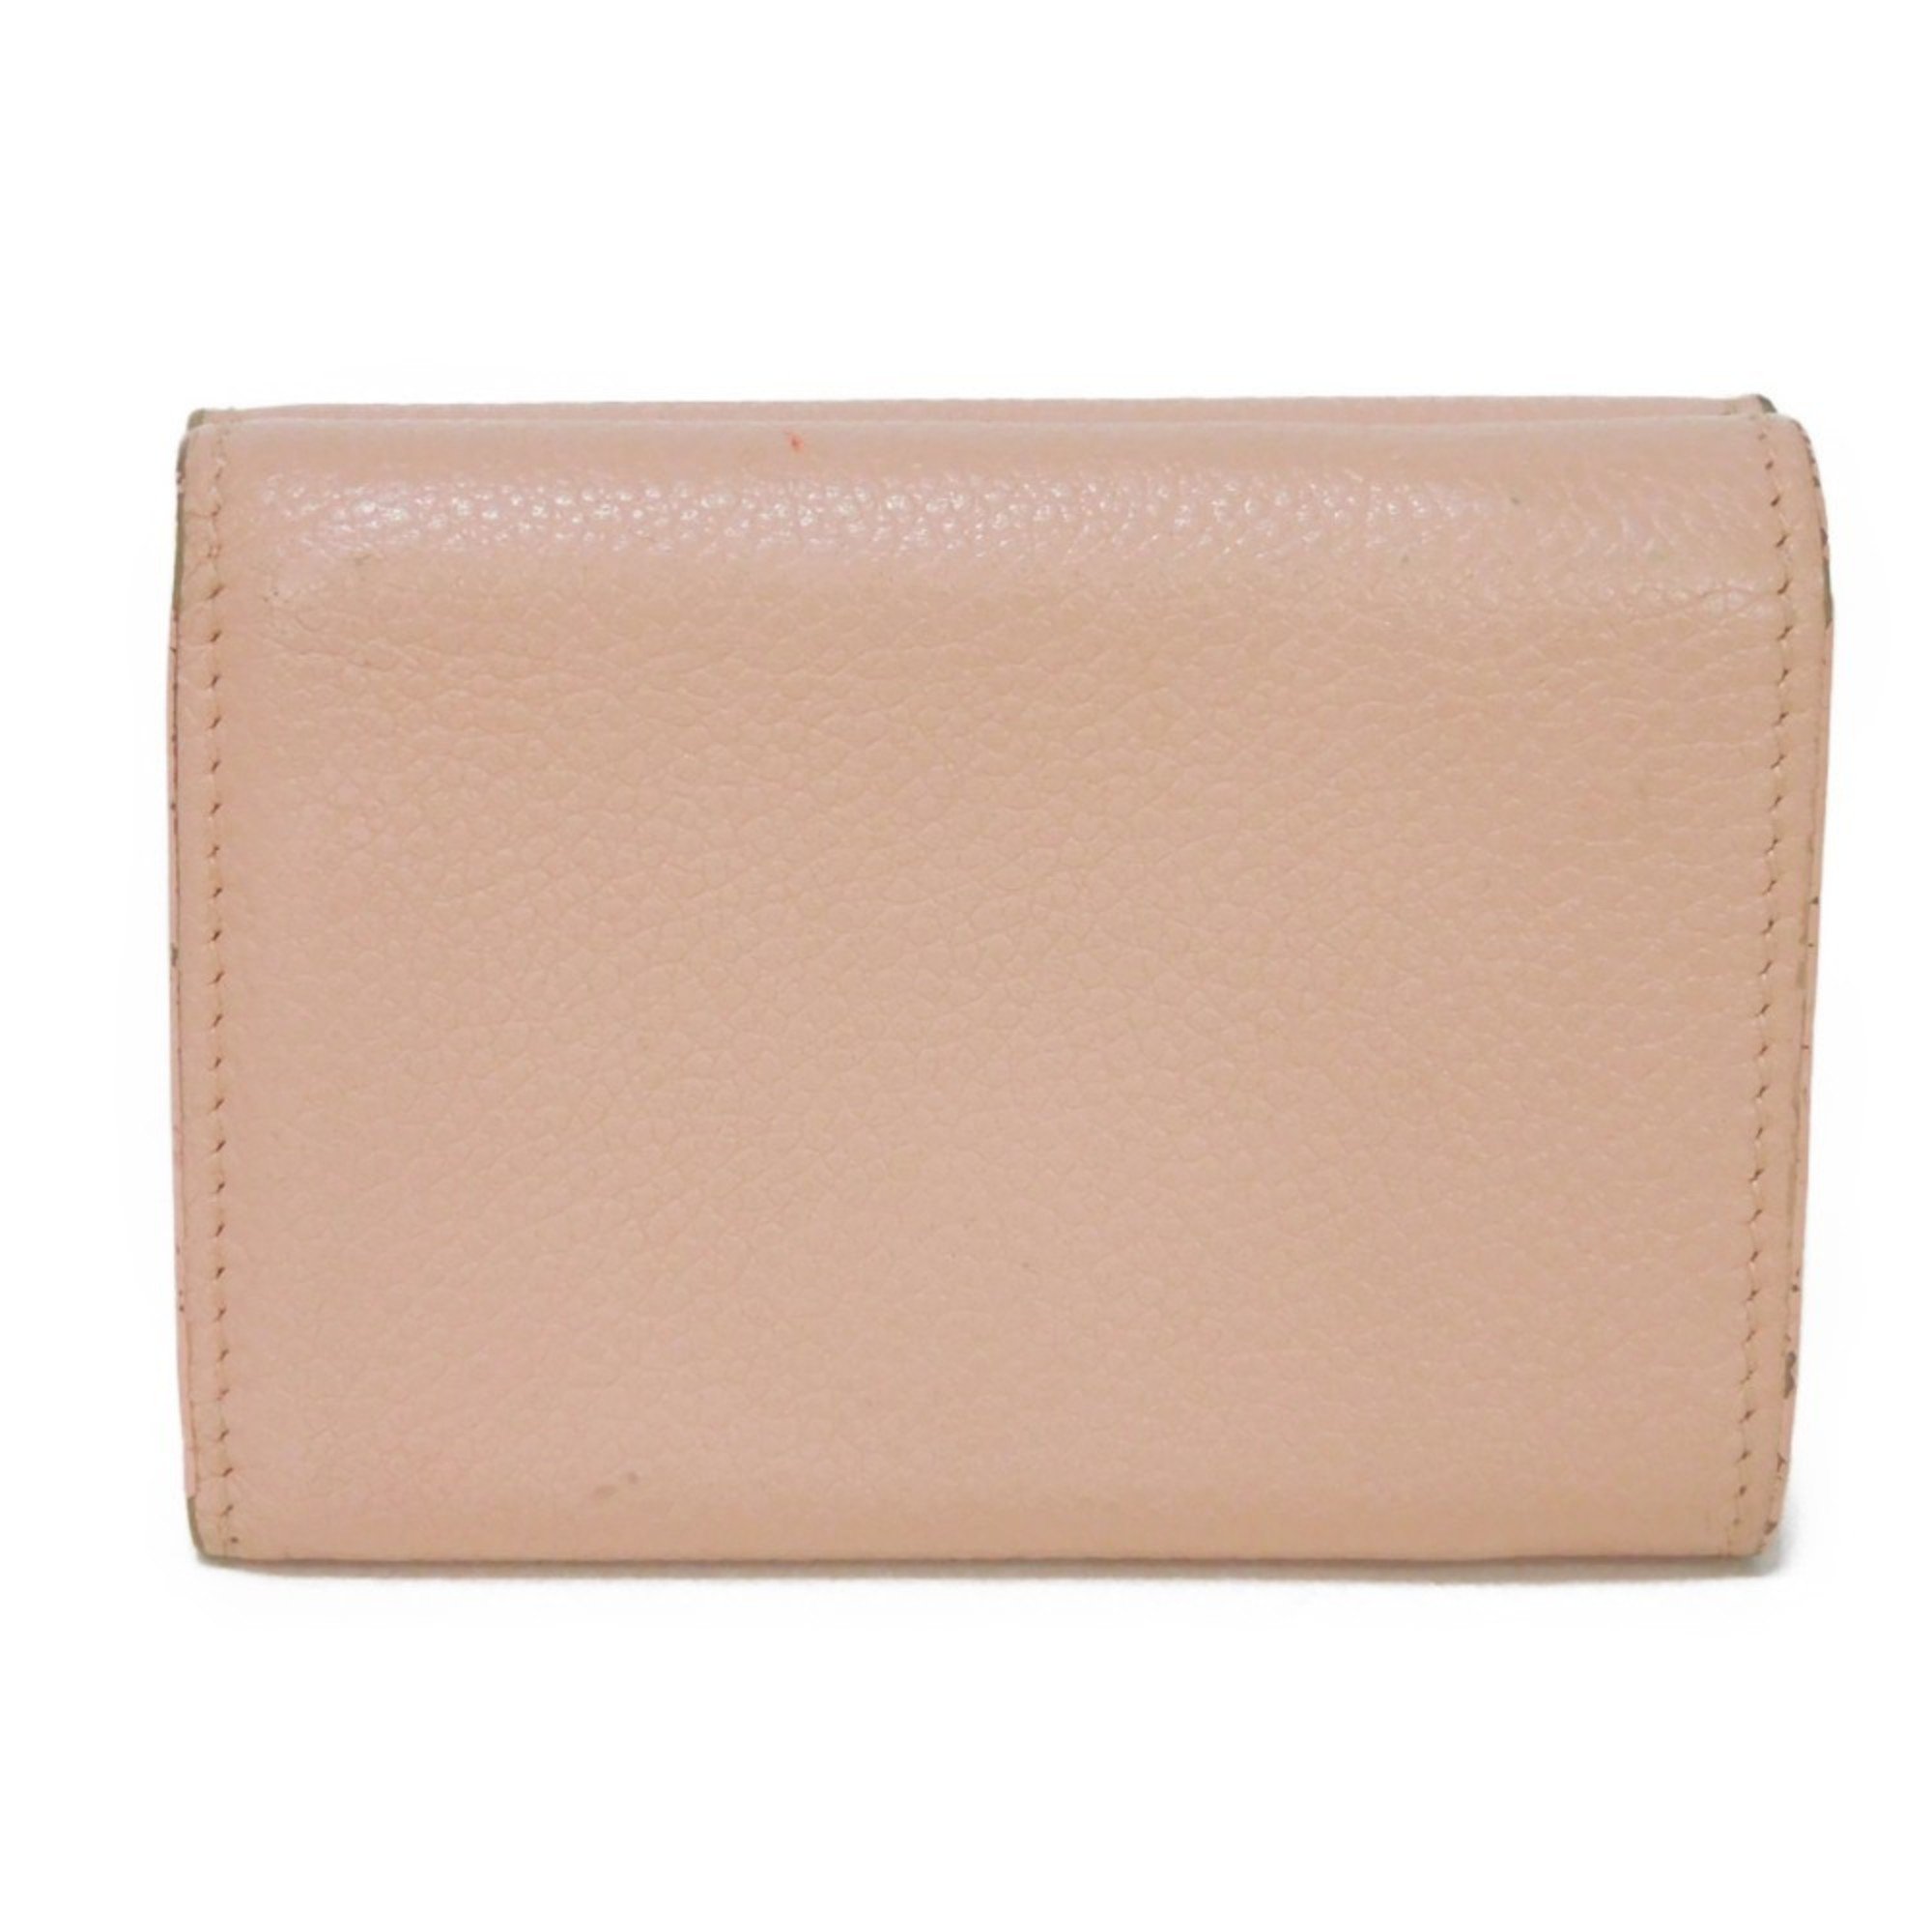 Saint Laurent SAINT LAURENT Trifold Wallet Tiny Foil Stamping Light Pink Compact 459784 Women's